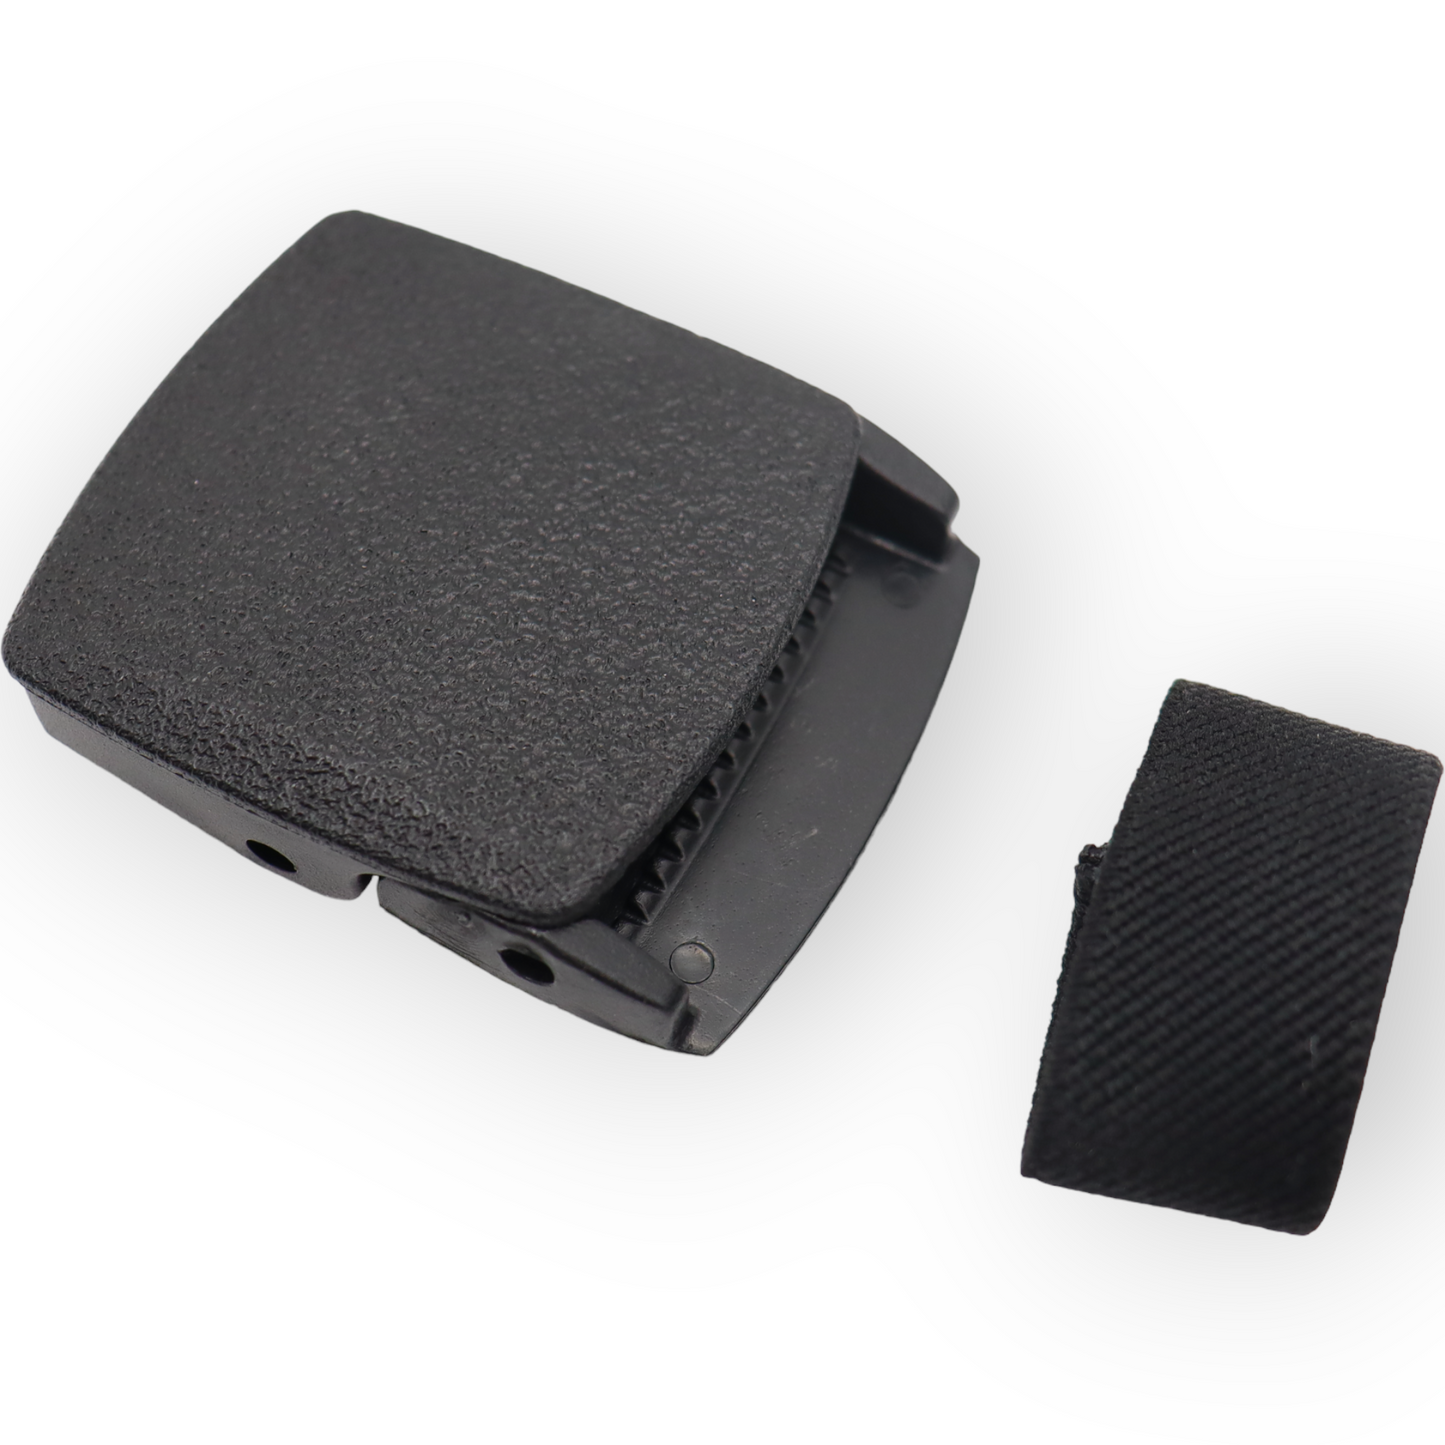 Plastic Koppel gesp voor tactical belts - 4 cm. - incl. lusje voor de riem - Zwart